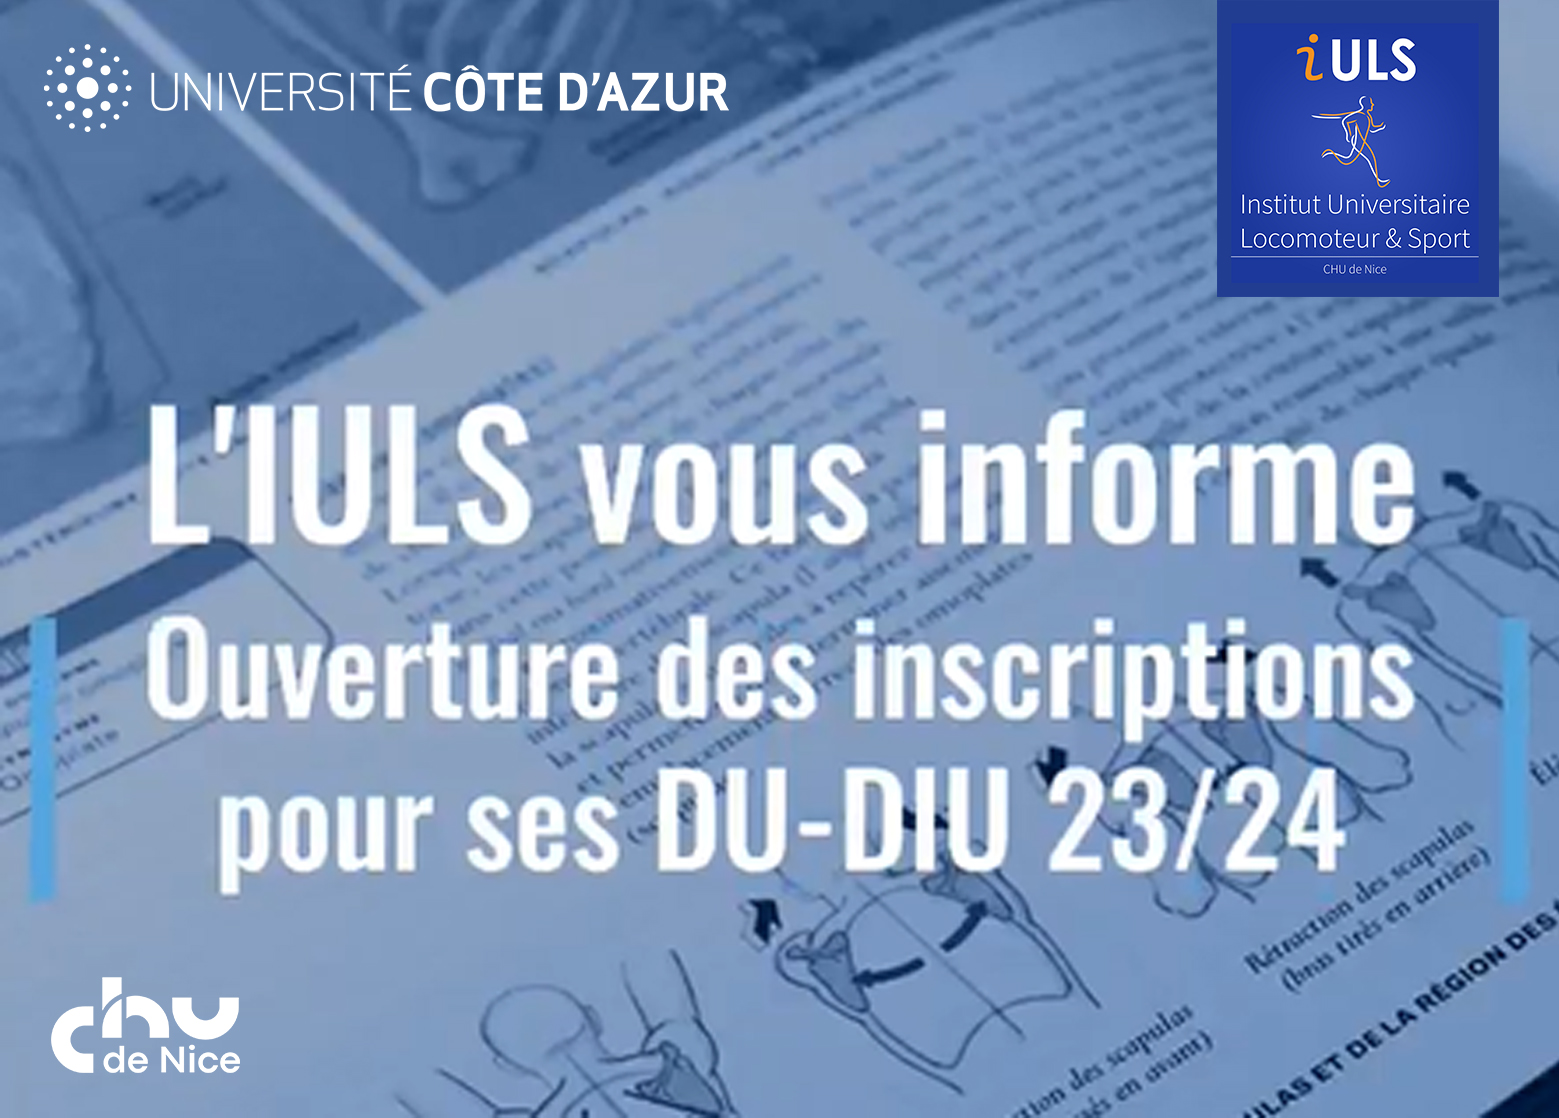 Notez les dates d'ouverture des inscriptions aux DU-DIU IULS 2023-2024!